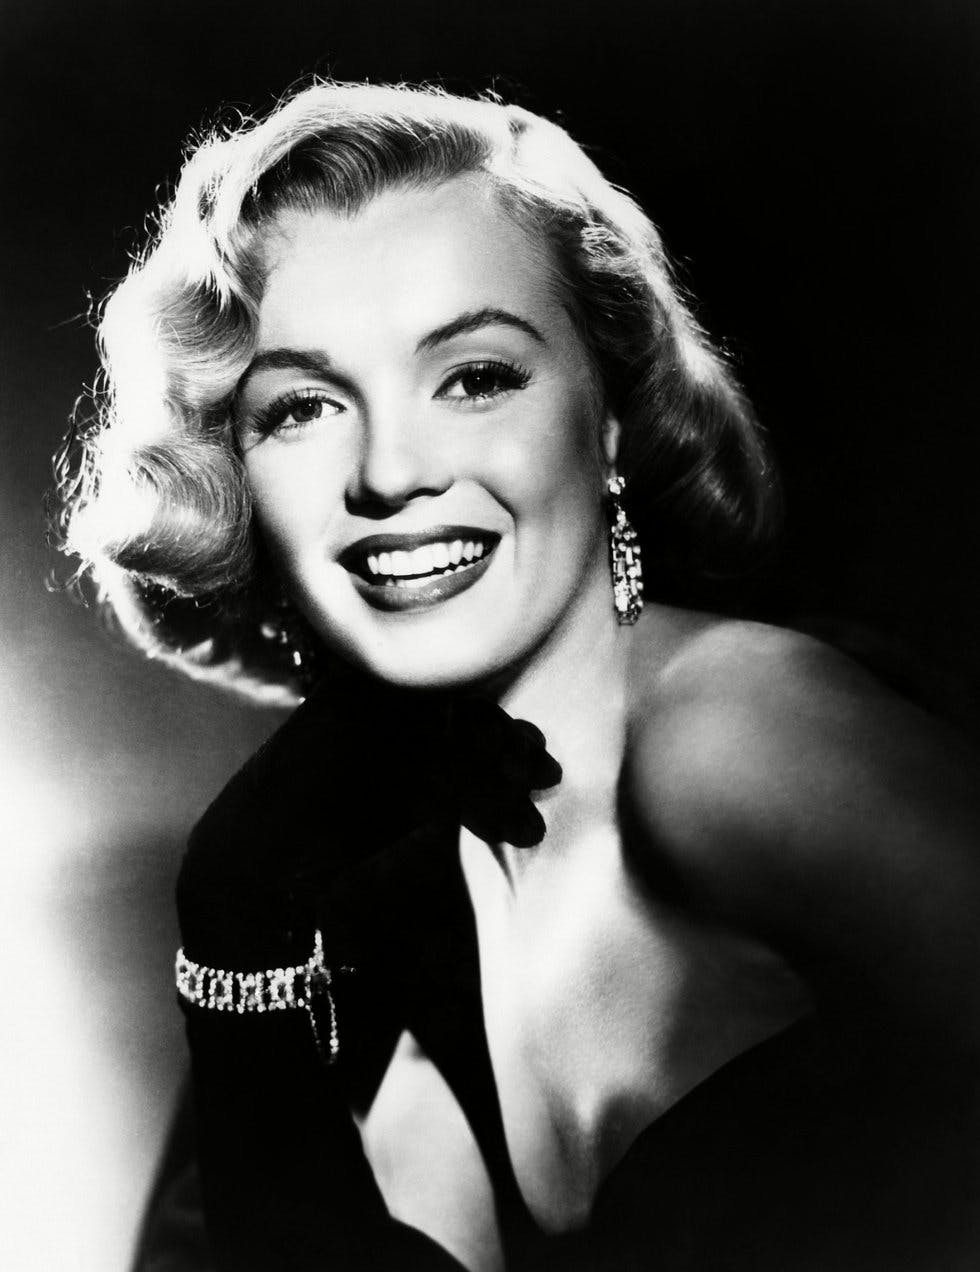 Marilyn Monroe actor “